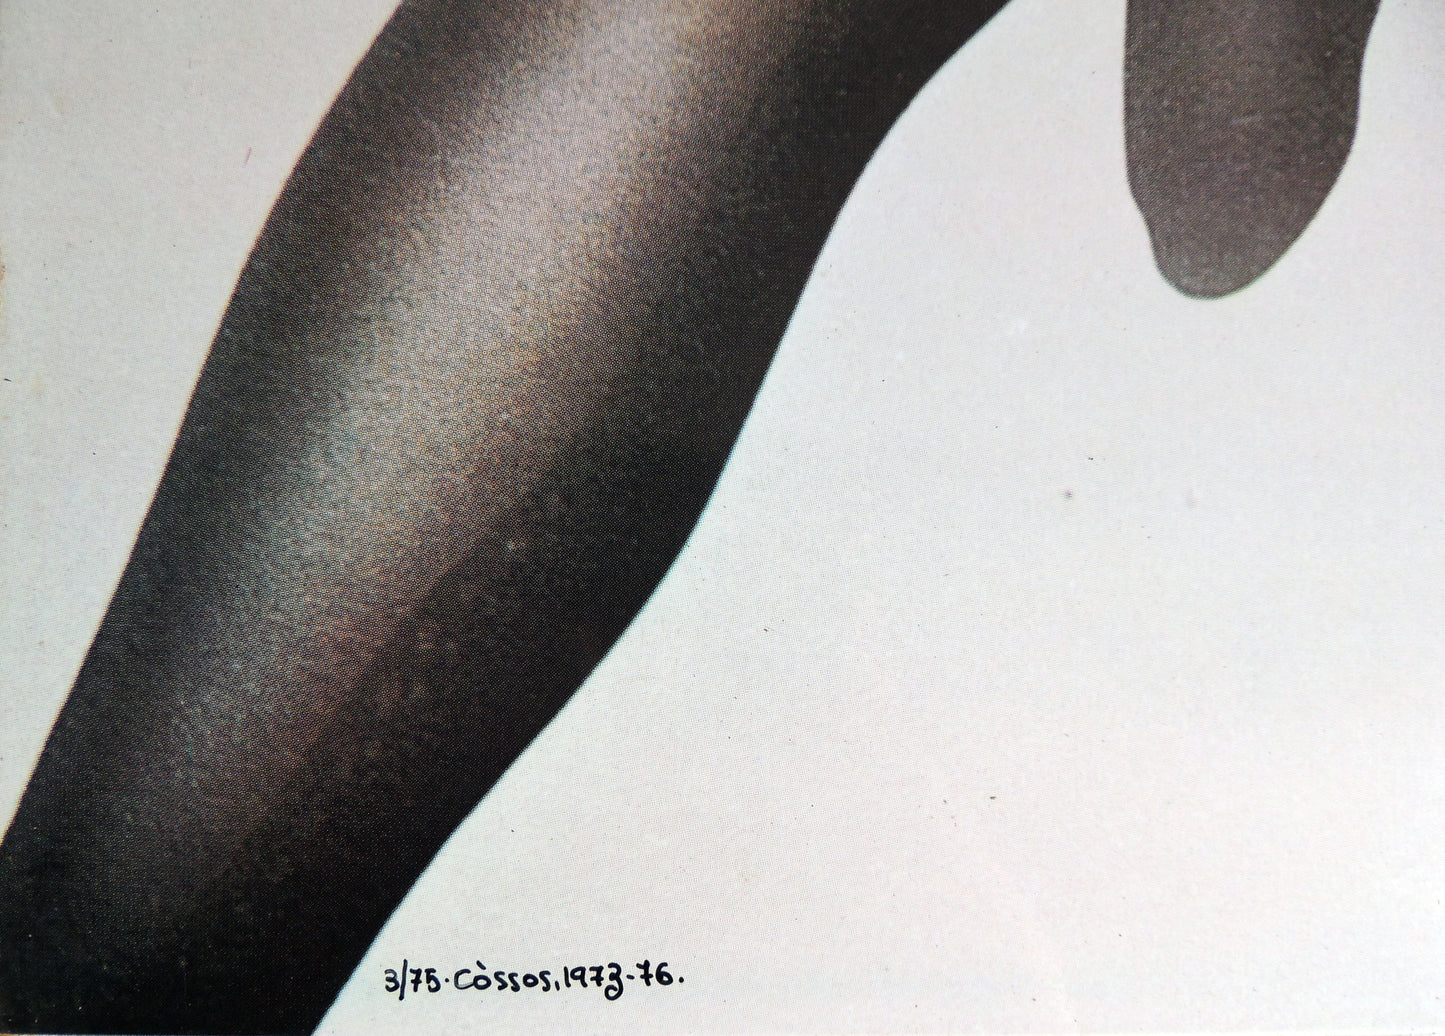 Impresión sobre plancha metálica edición limitada arte contemporáneo Antoni Miró Cossos detalle Gaudifond